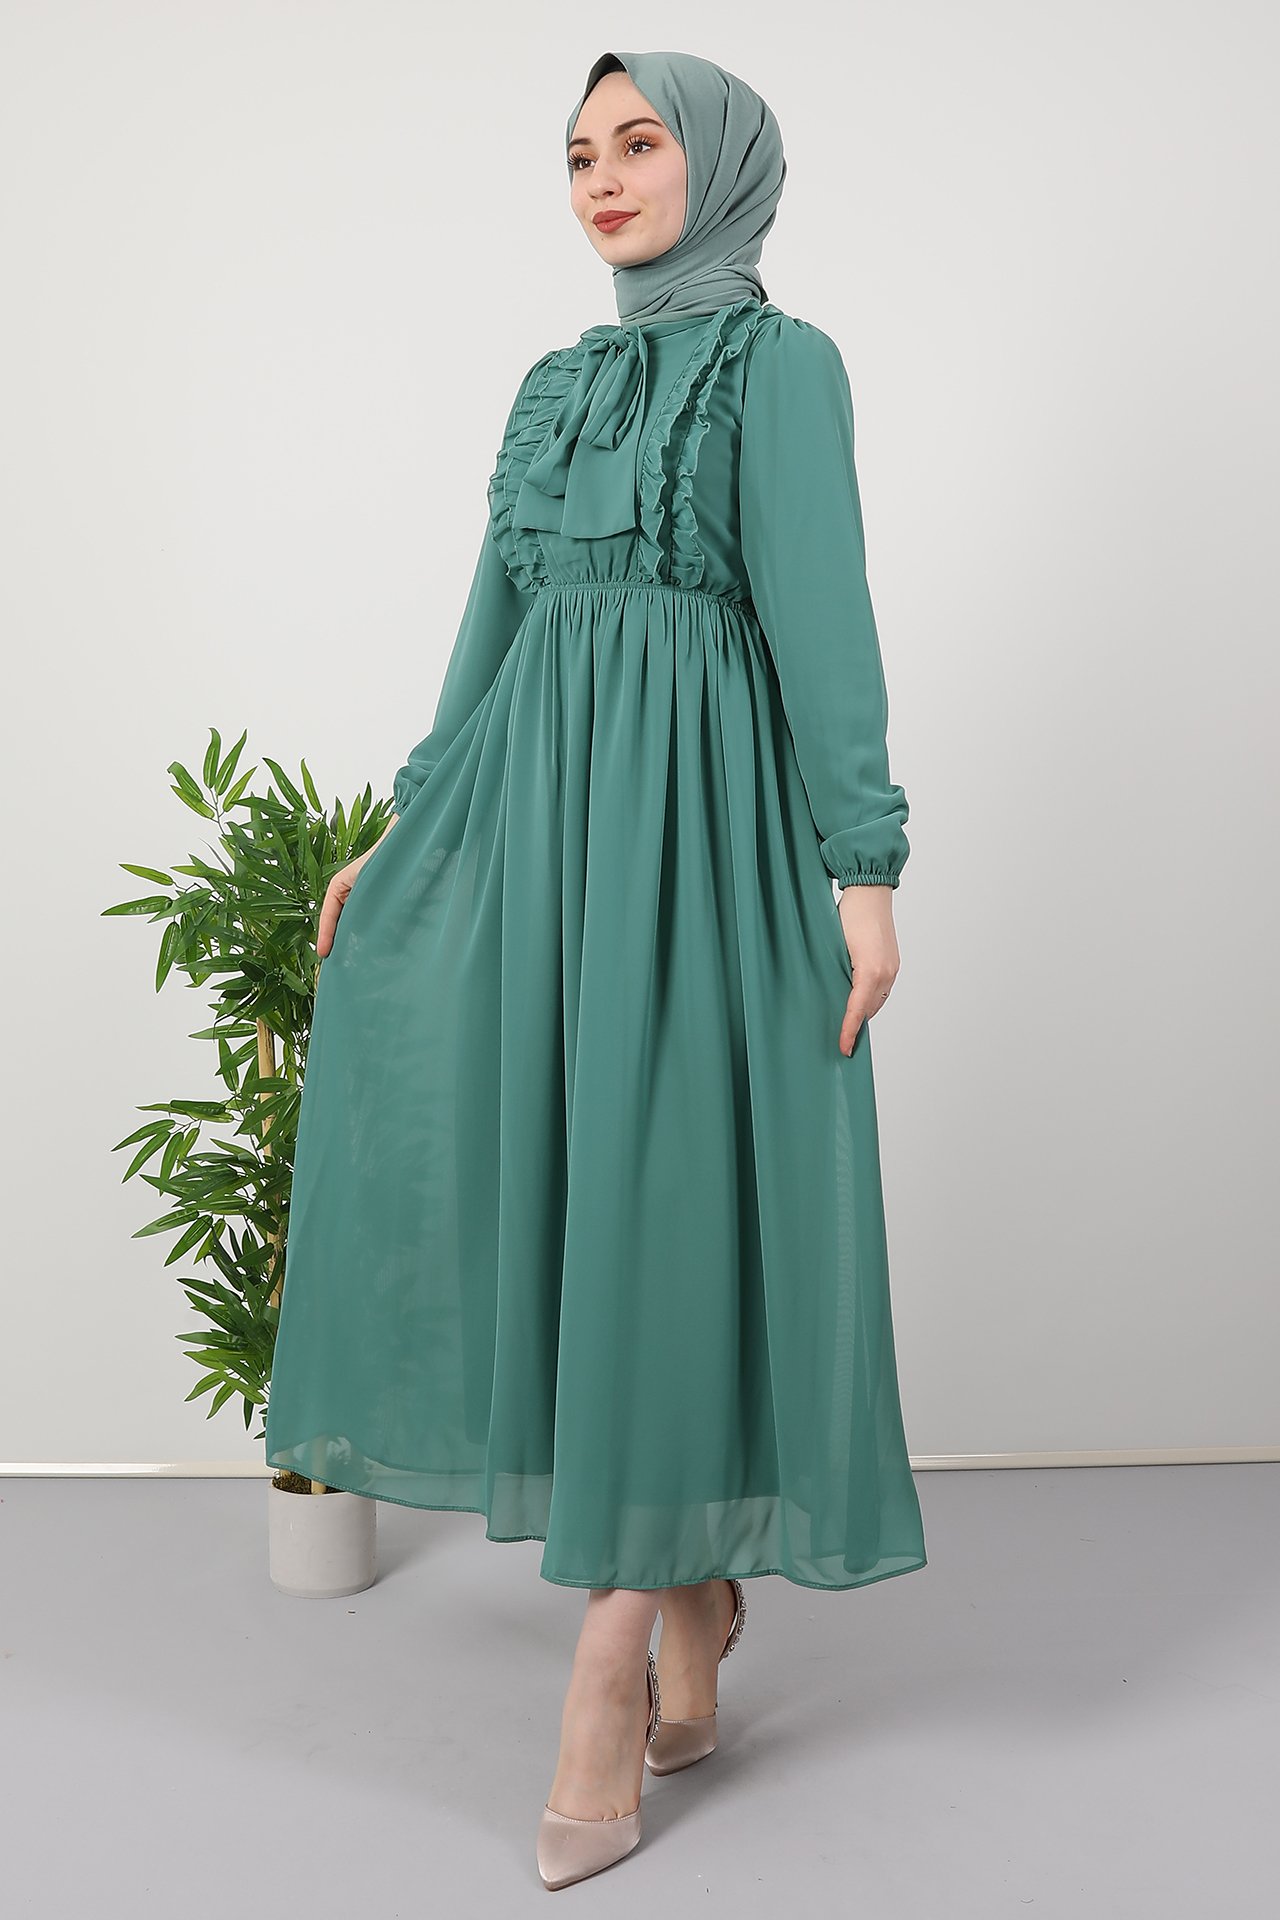 GİZAGİYİM - Yakası Fiyonk Detaylı Elbise Mint